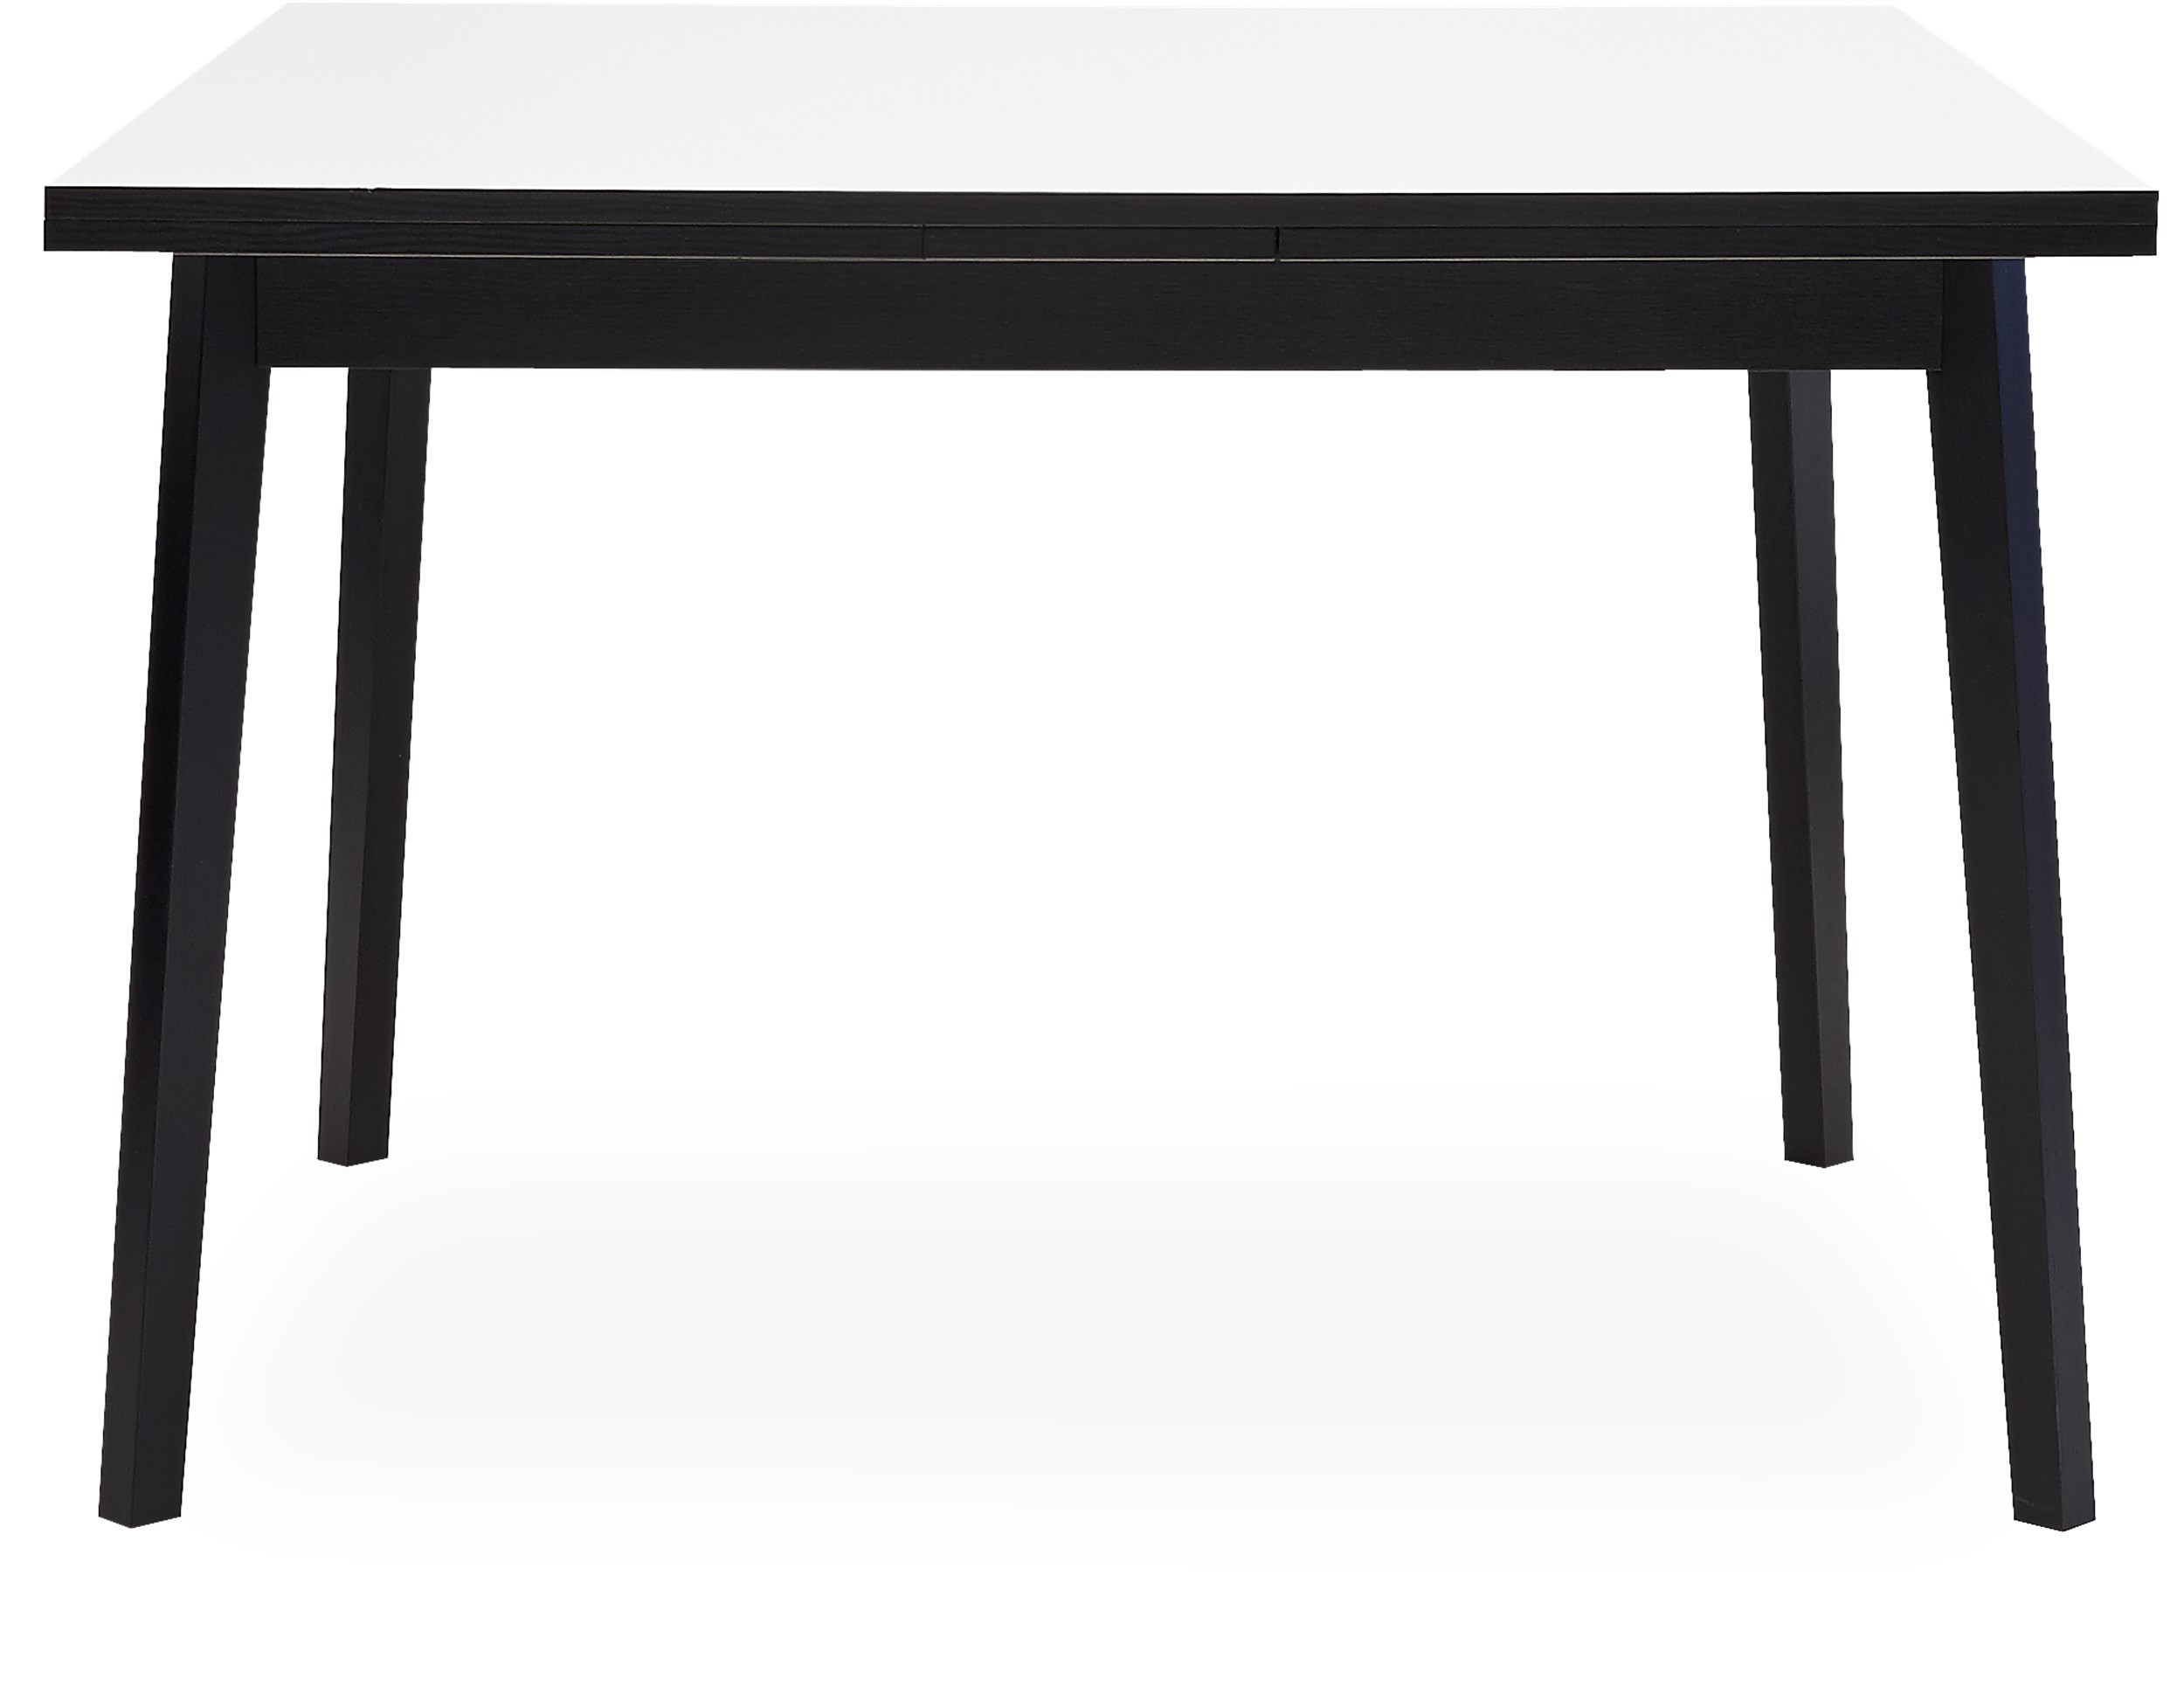 Single Matbord 90 x 90 x 76 cm - Vit melamin, lackerat, svartmålat ekfaner och ben i svartmålad, lackerad massiv ek